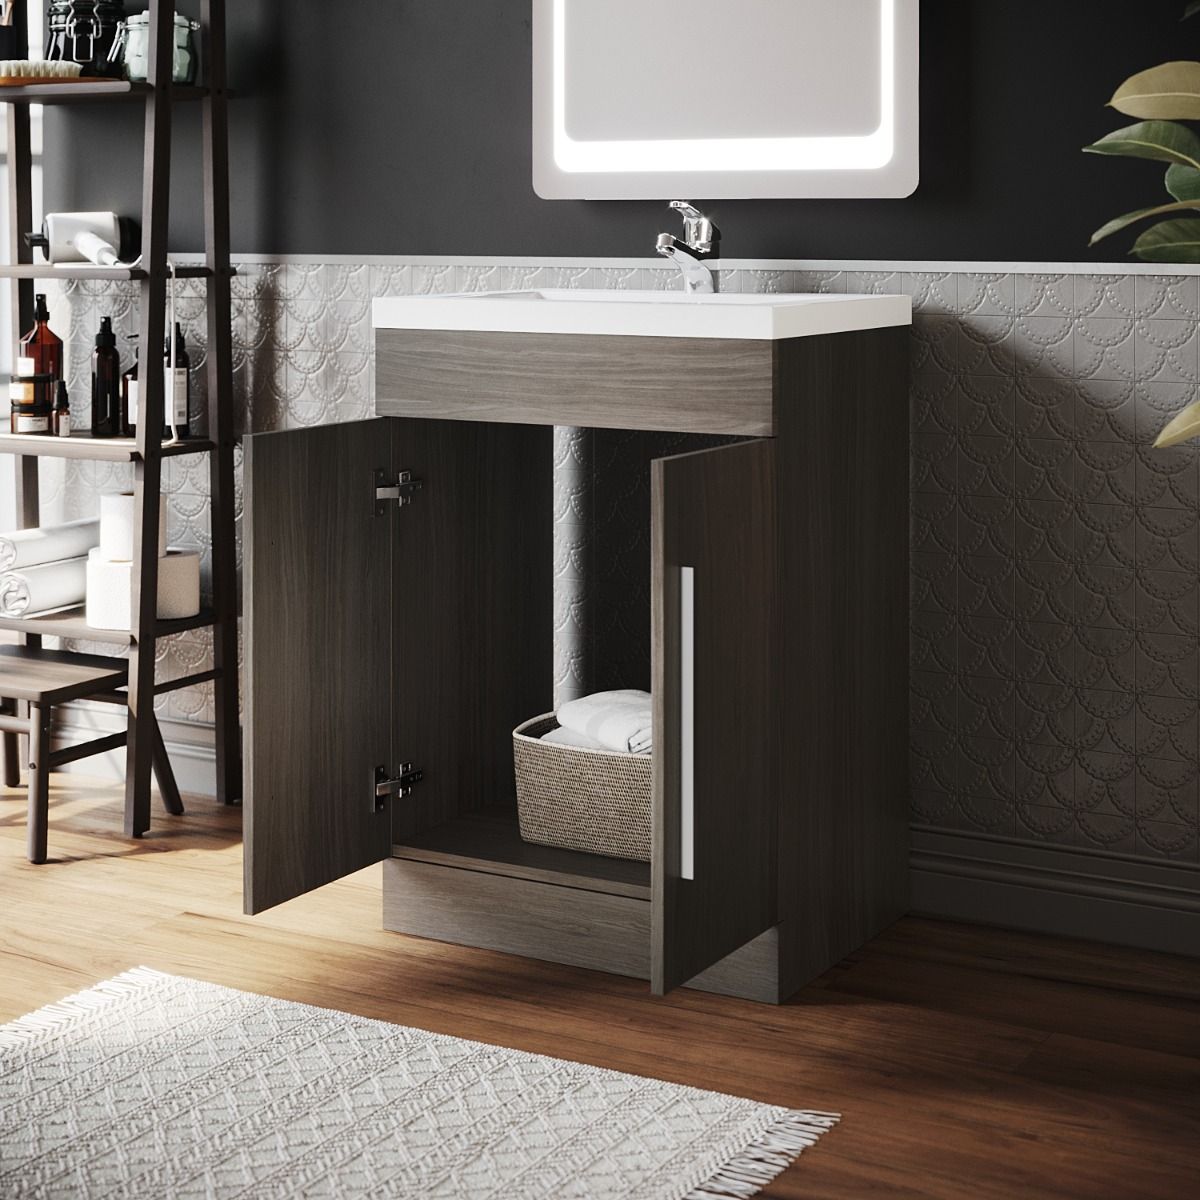  Bathroom Furniture Sets Online